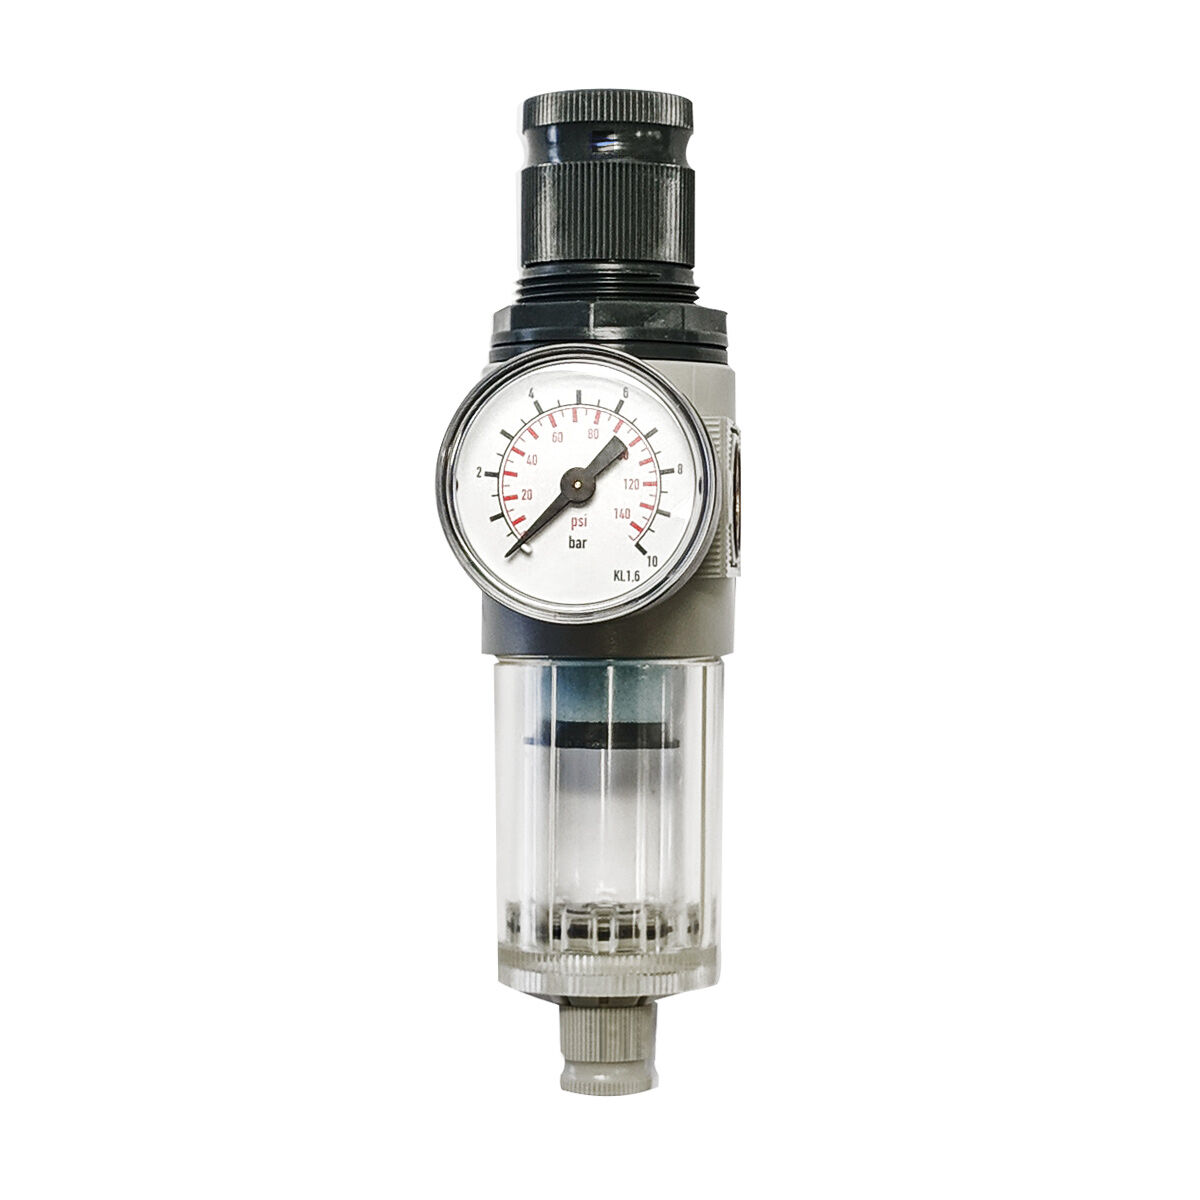 Filtre réducteur de pression Régulateur de pression FDM 1/4 0-10 bar D225027 G225027 DGKD225027